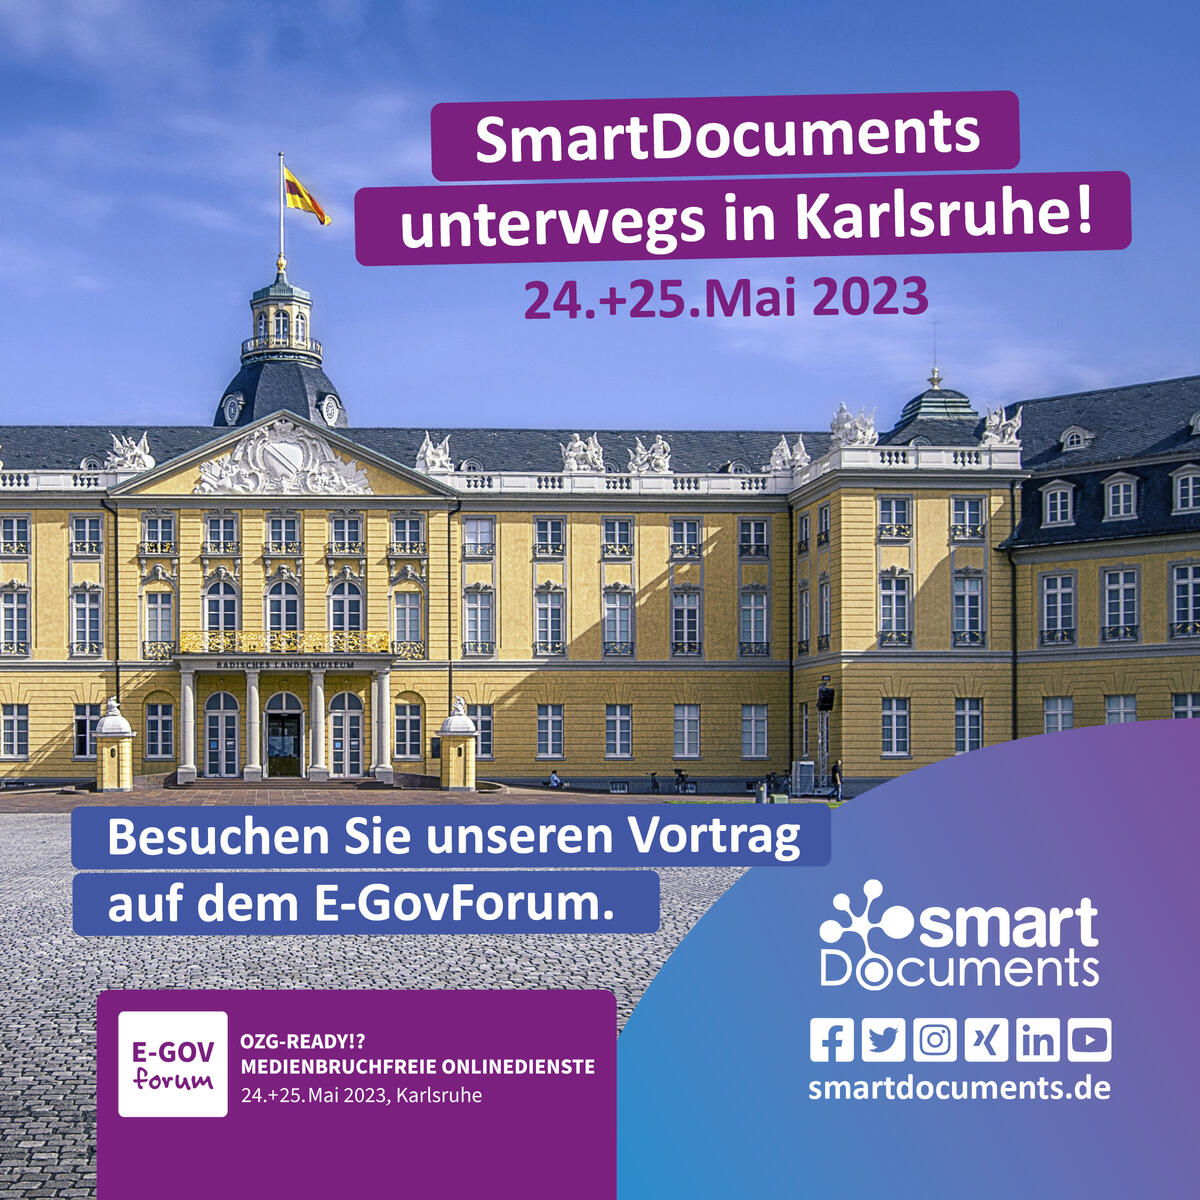 Form-Solutions E-GovForum 2023, 24.+25.05.2023 in Karlsruhe
"OZG-Ready - Medienbruchfreie Onlinedienste"